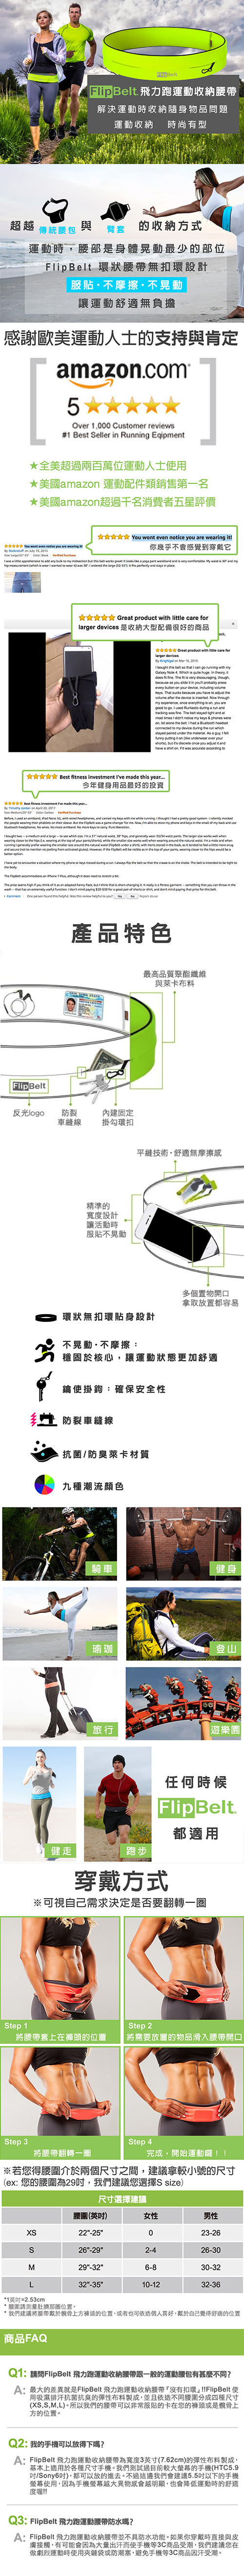 FlipBelt 飛力跑運動收納腰帶 經典款 螢光橘 (XS)